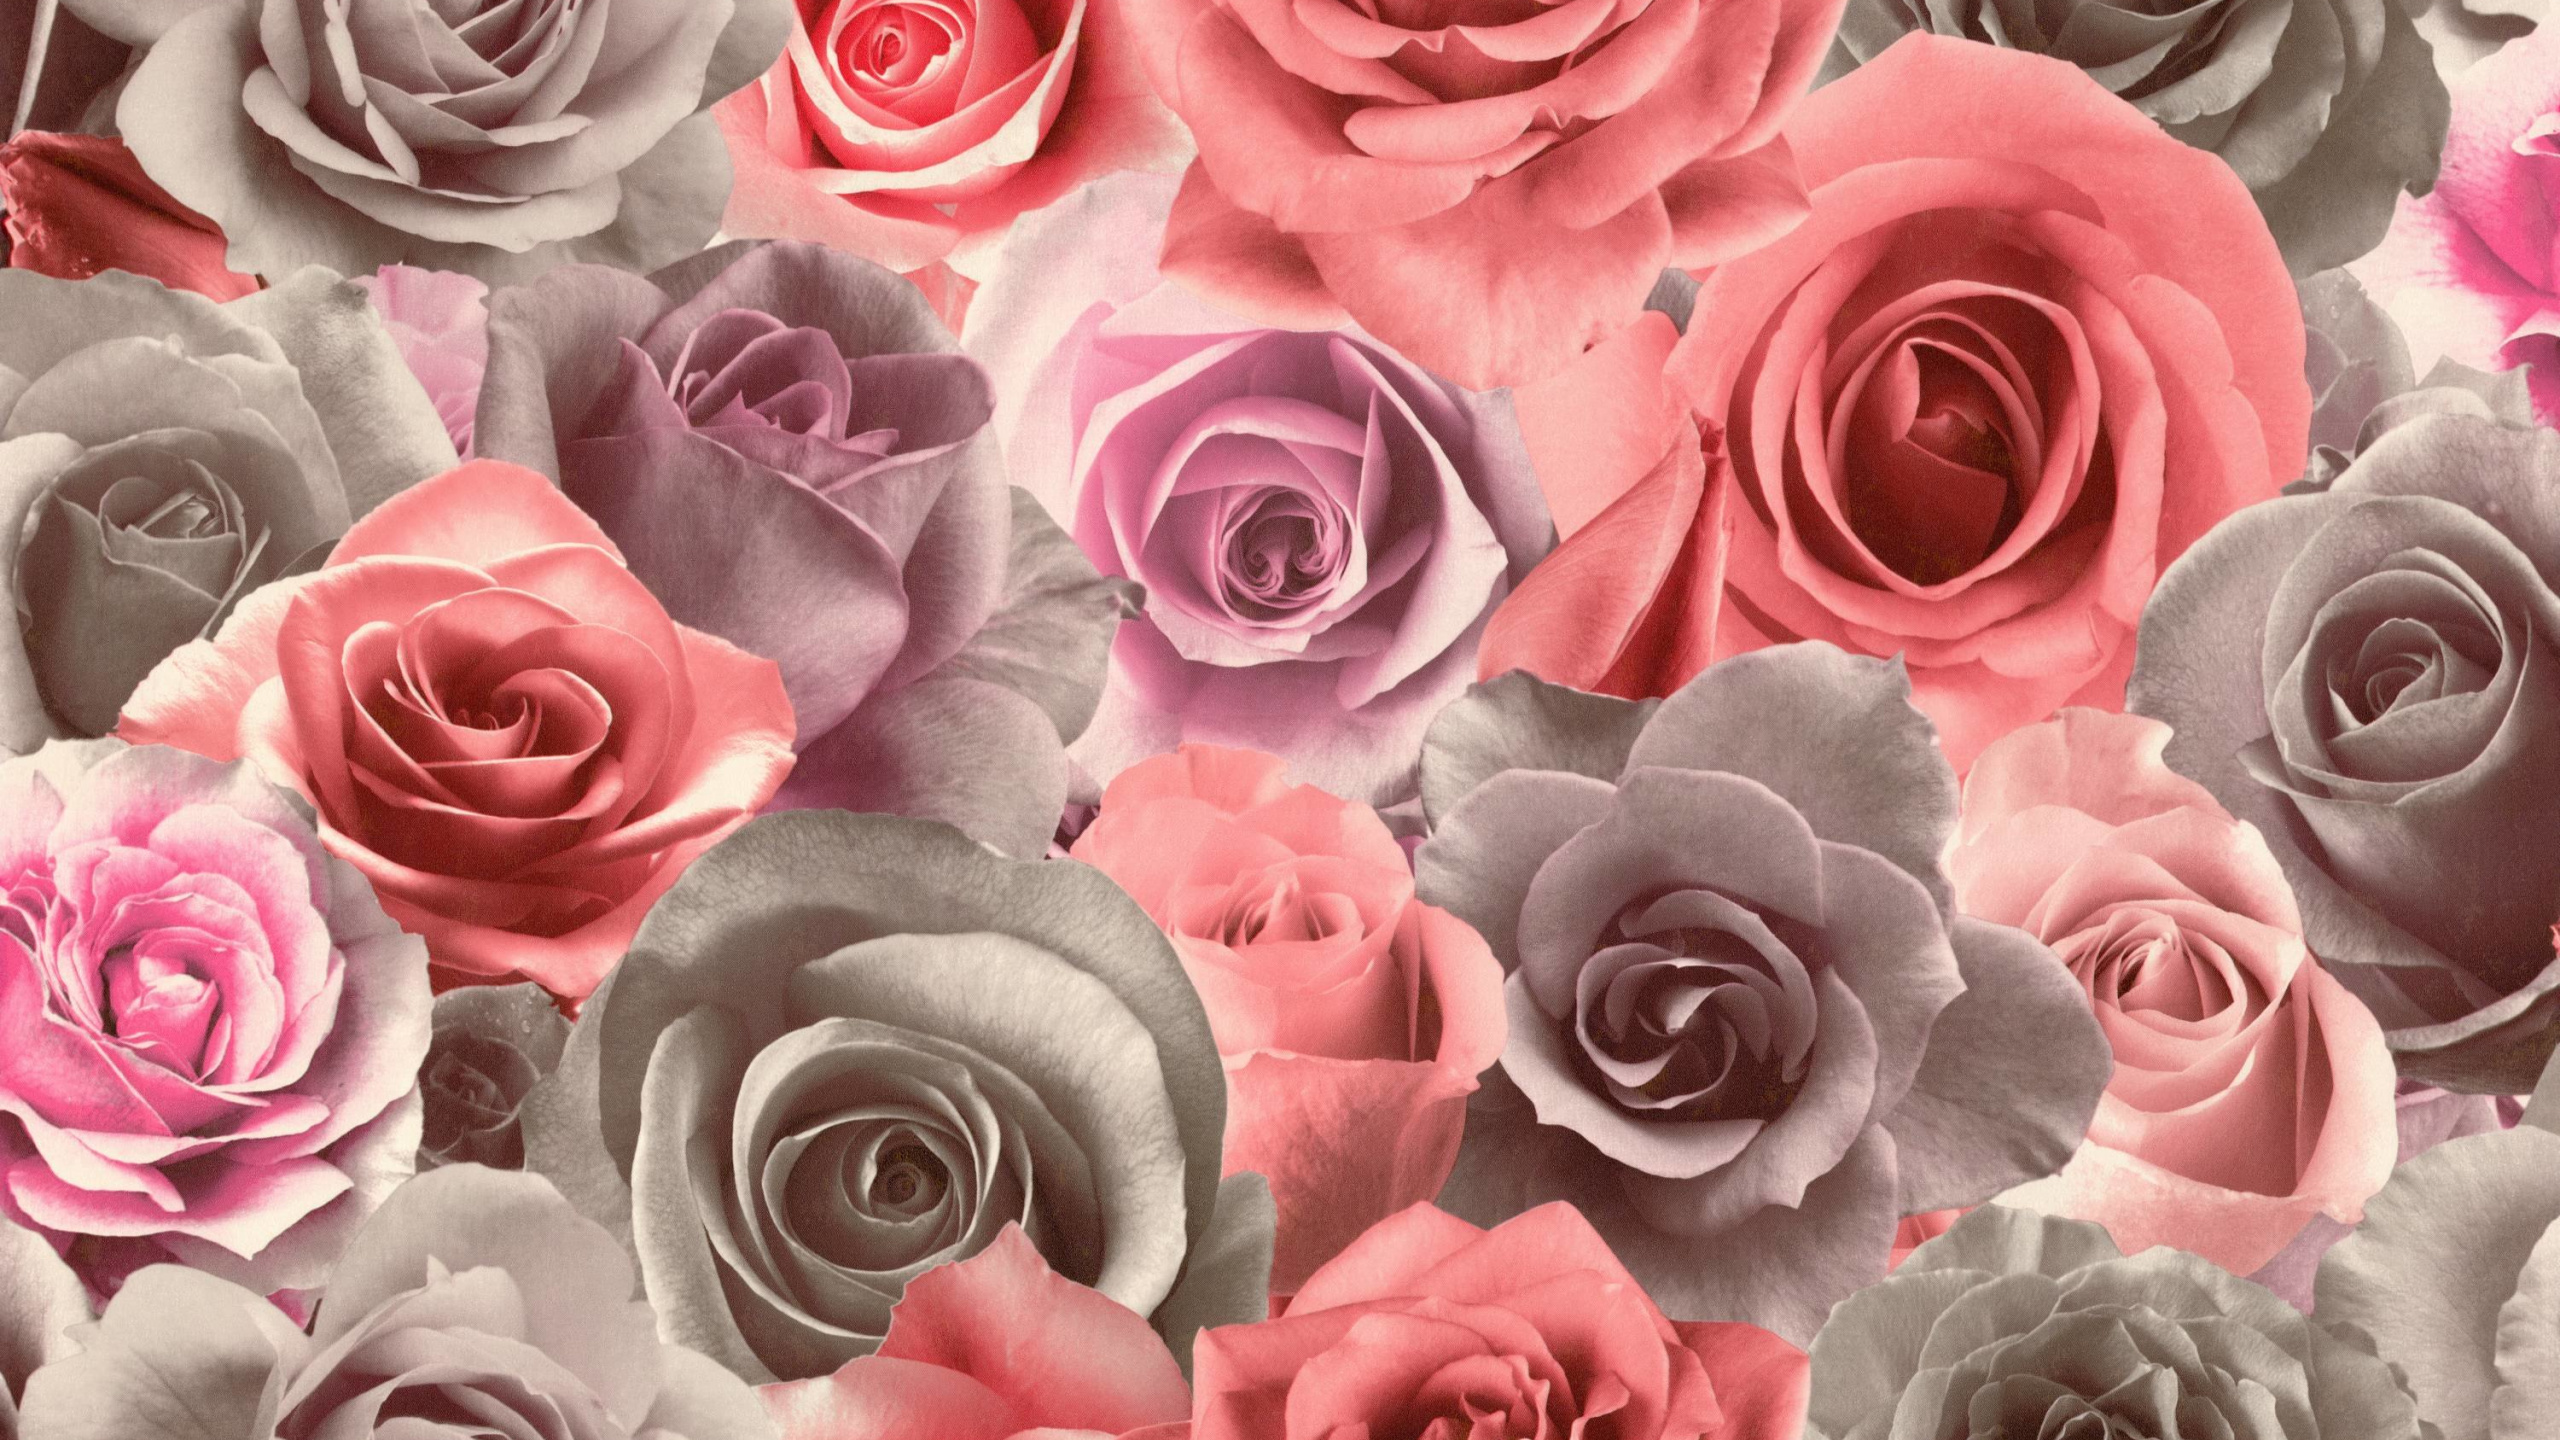 Rosas Rosadas en Fotografía de Cerca. Wallpaper in 2560x1440 Resolution